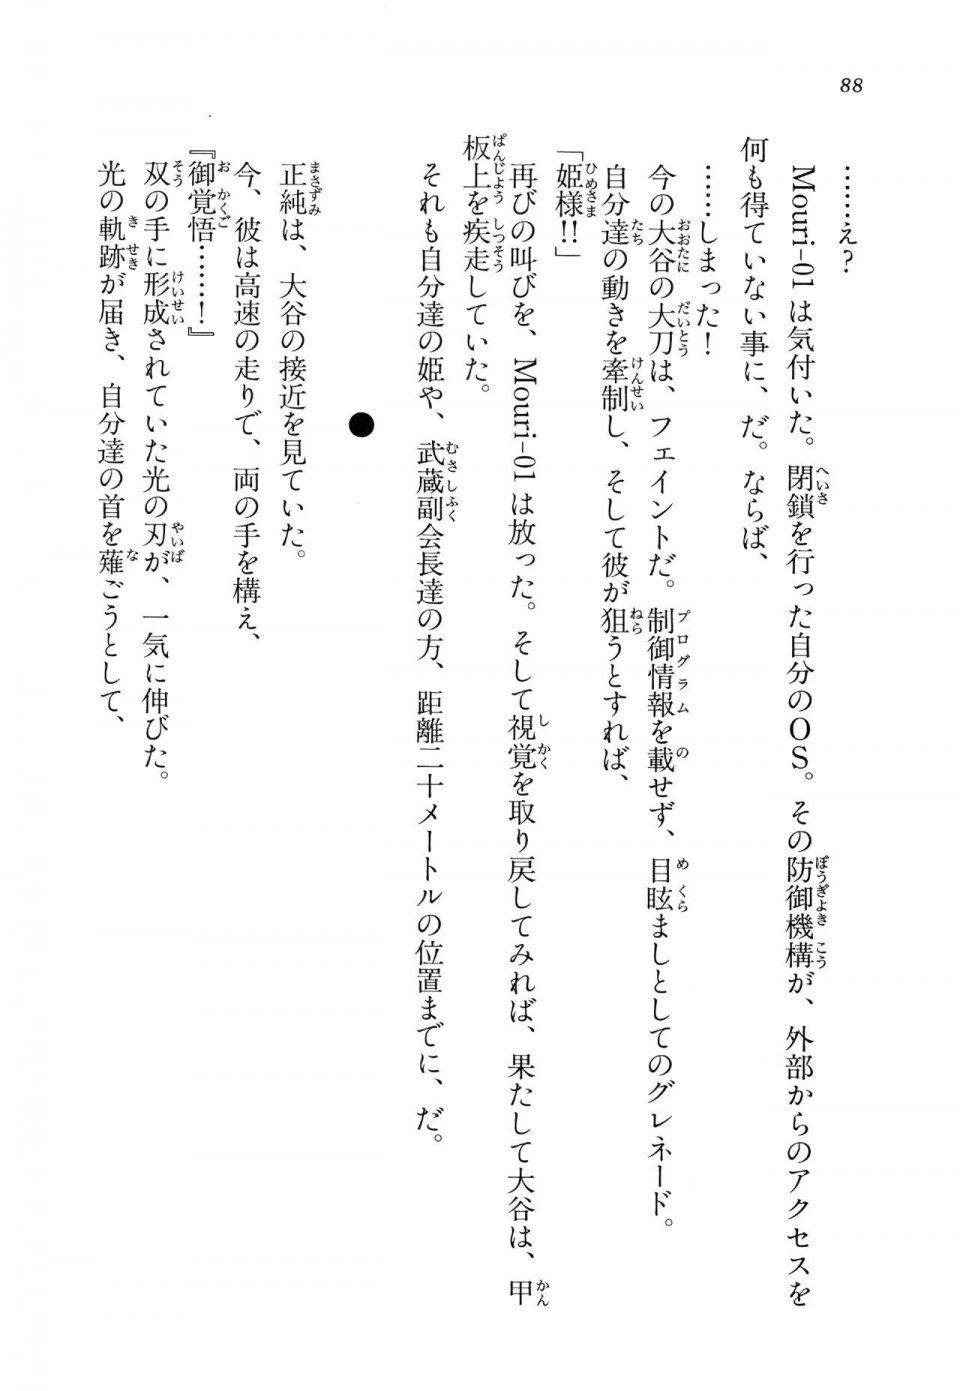 Kyoukai Senjou no Horizon LN Vol 14(6B) - Photo #88